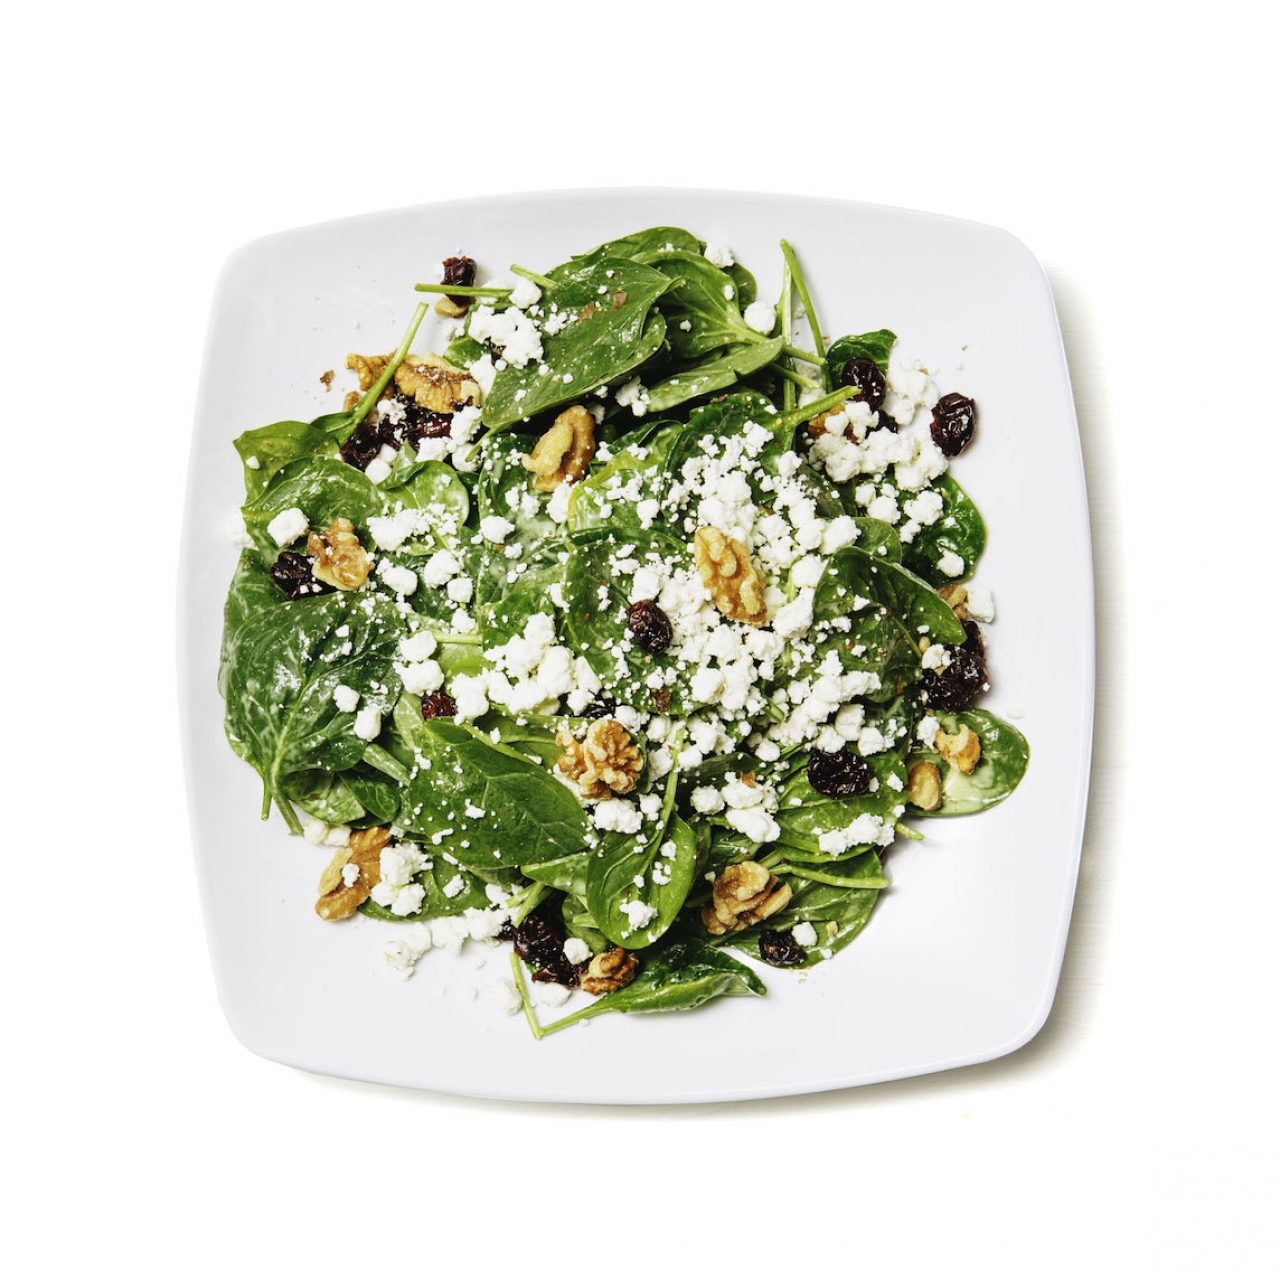 Salade Repas d'Épinard //Meal Spinach Salad